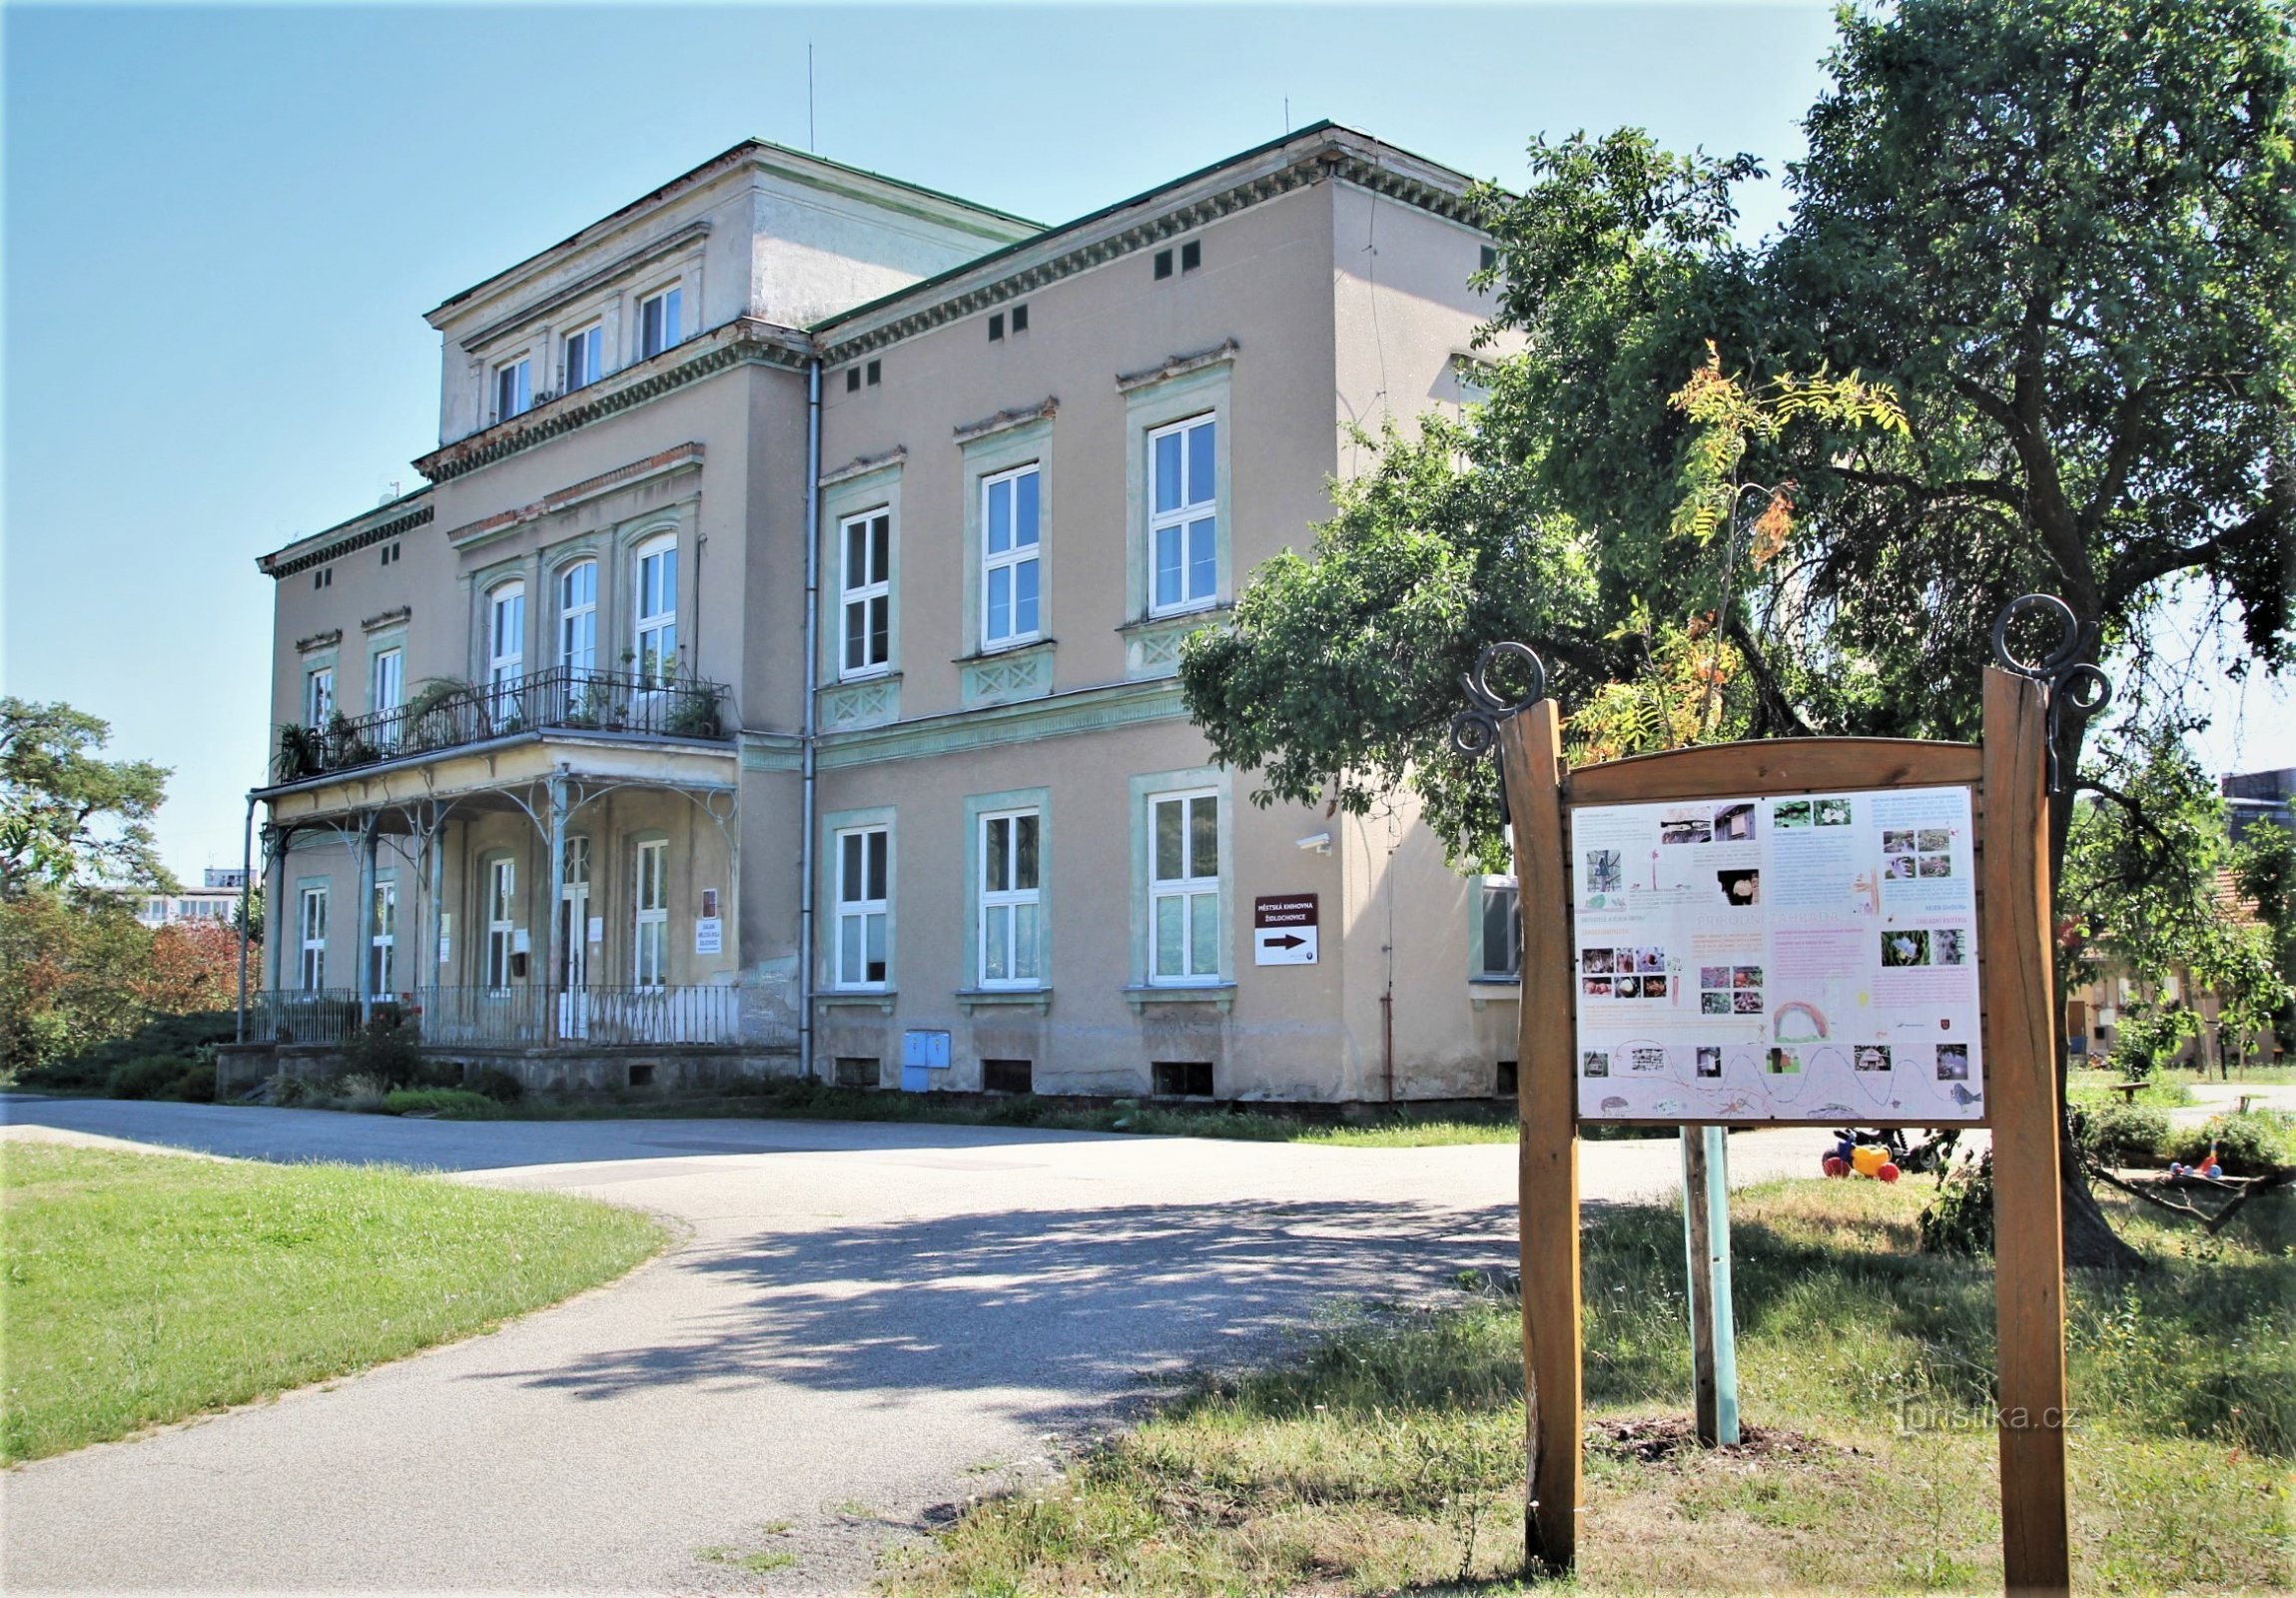 Židlochovice - Zone de la villa de Robert